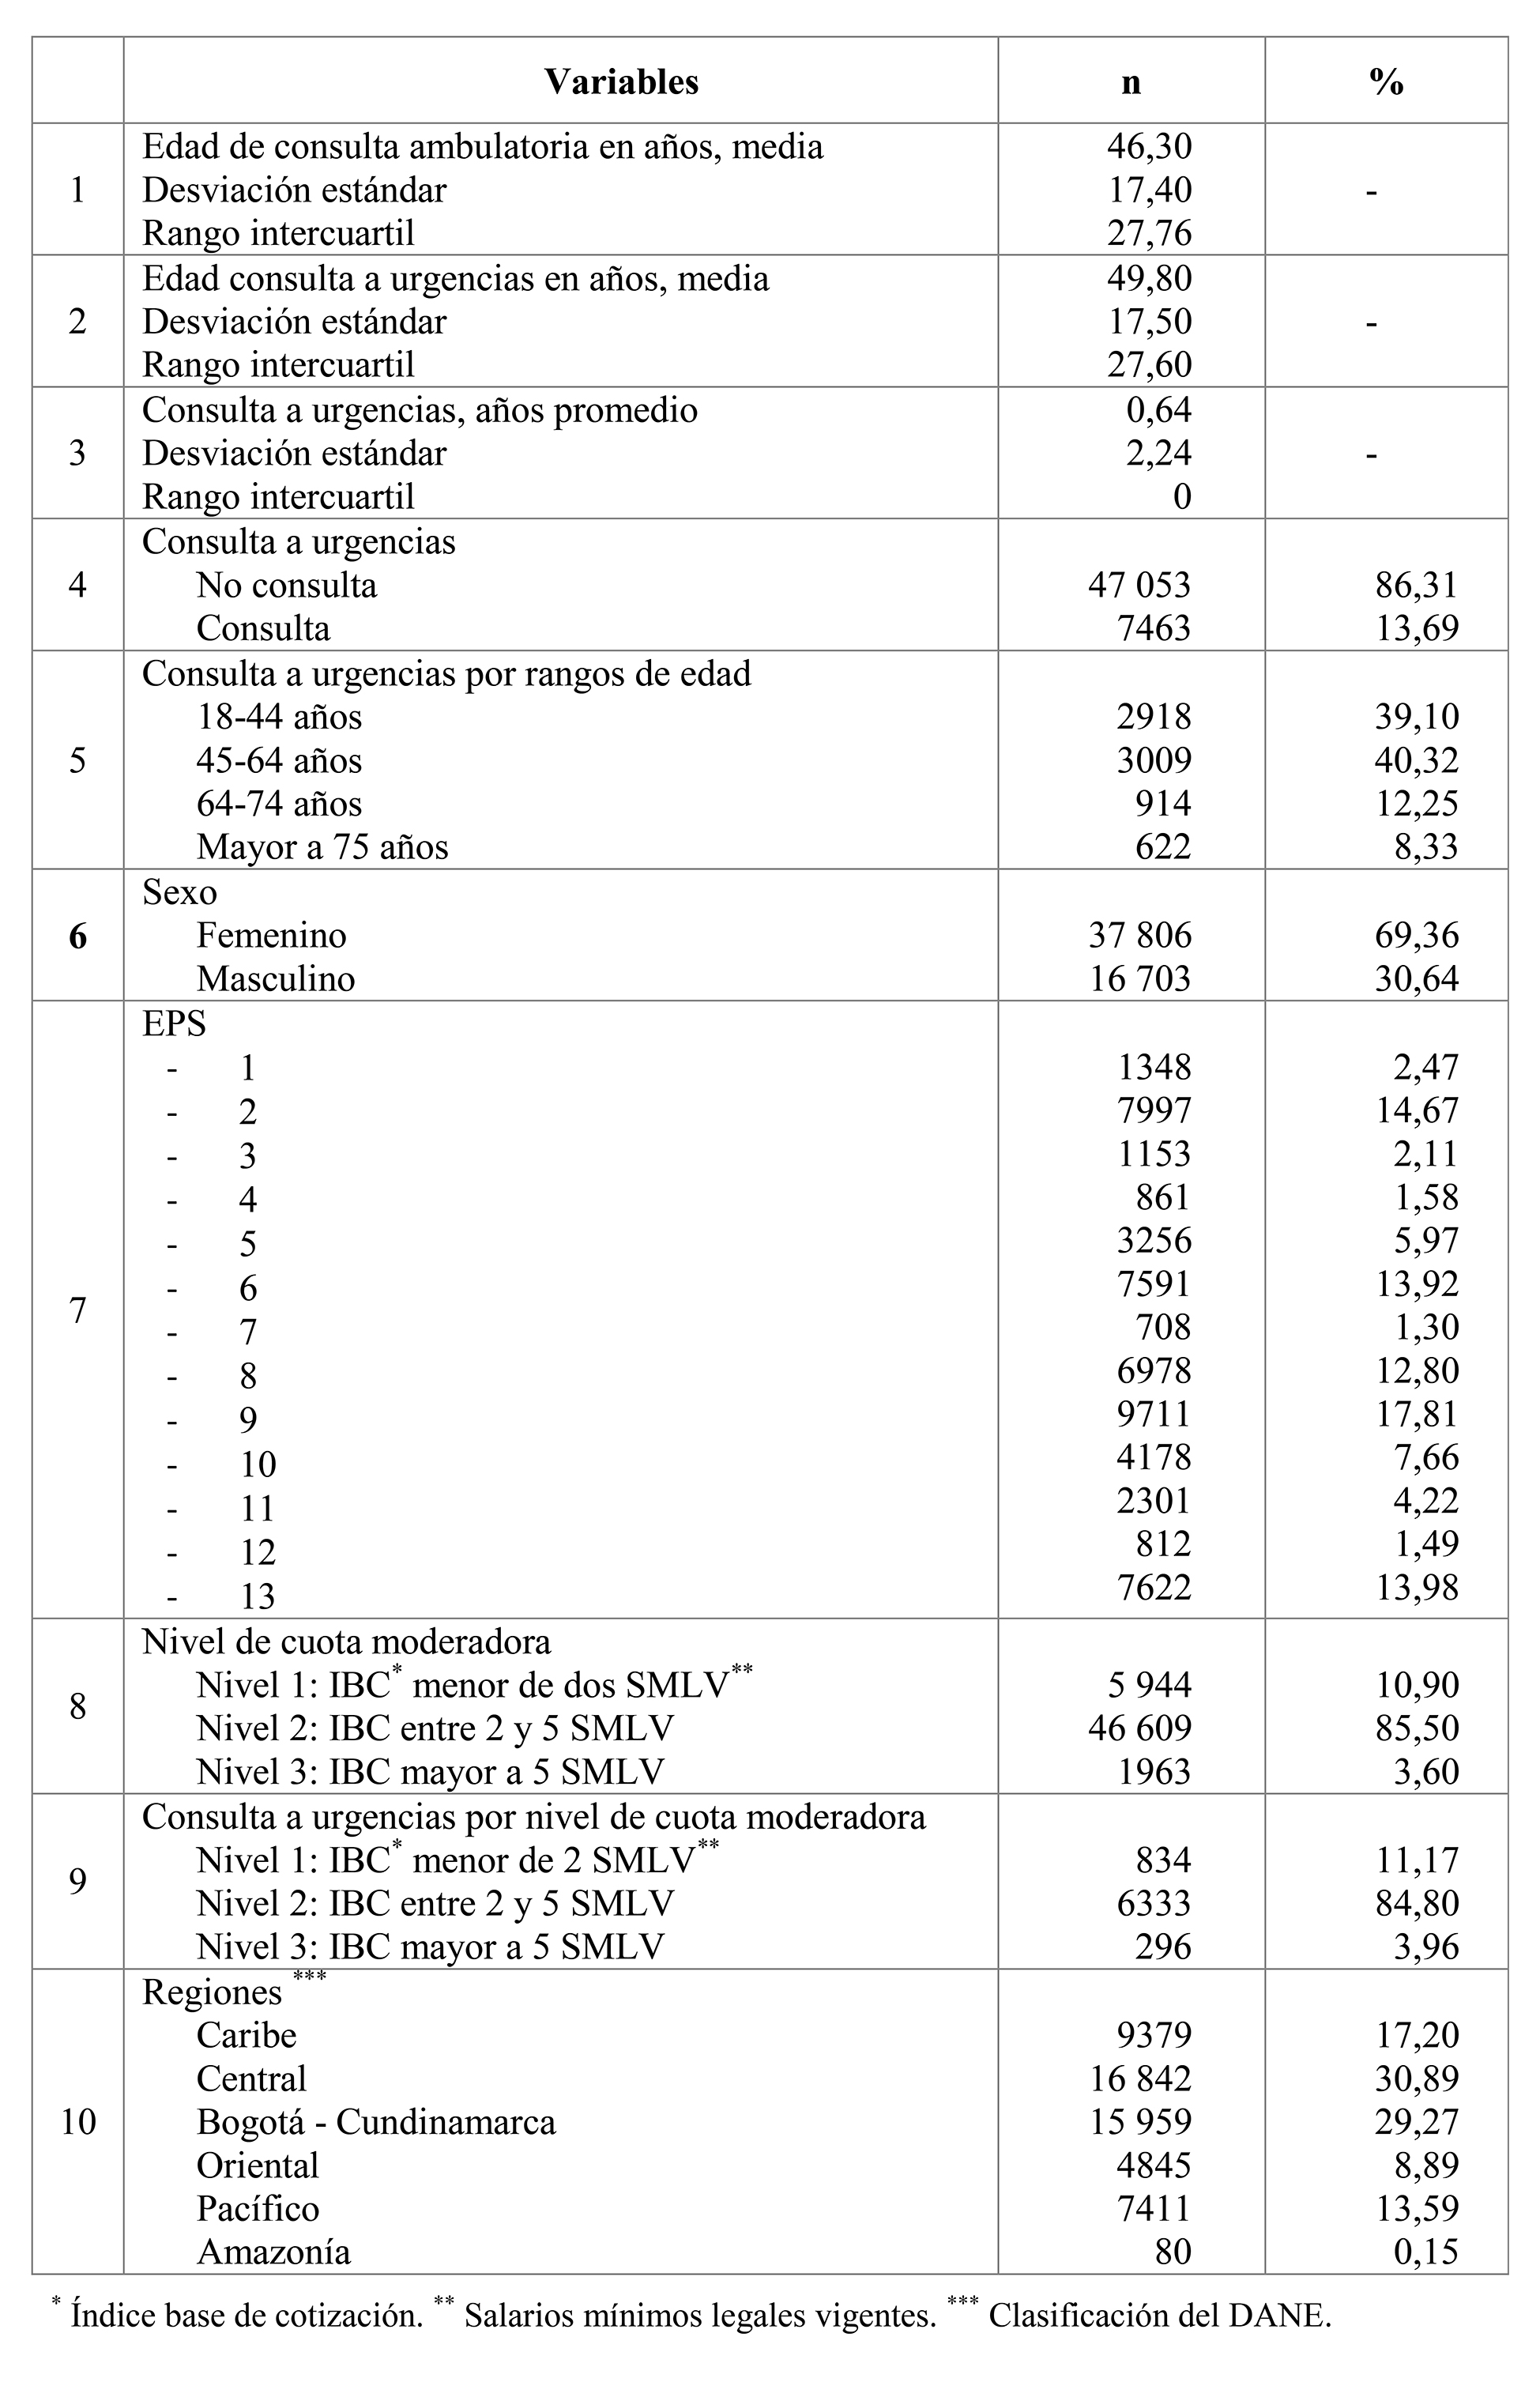 Características basales de la cohorte de pacientes asmáticos